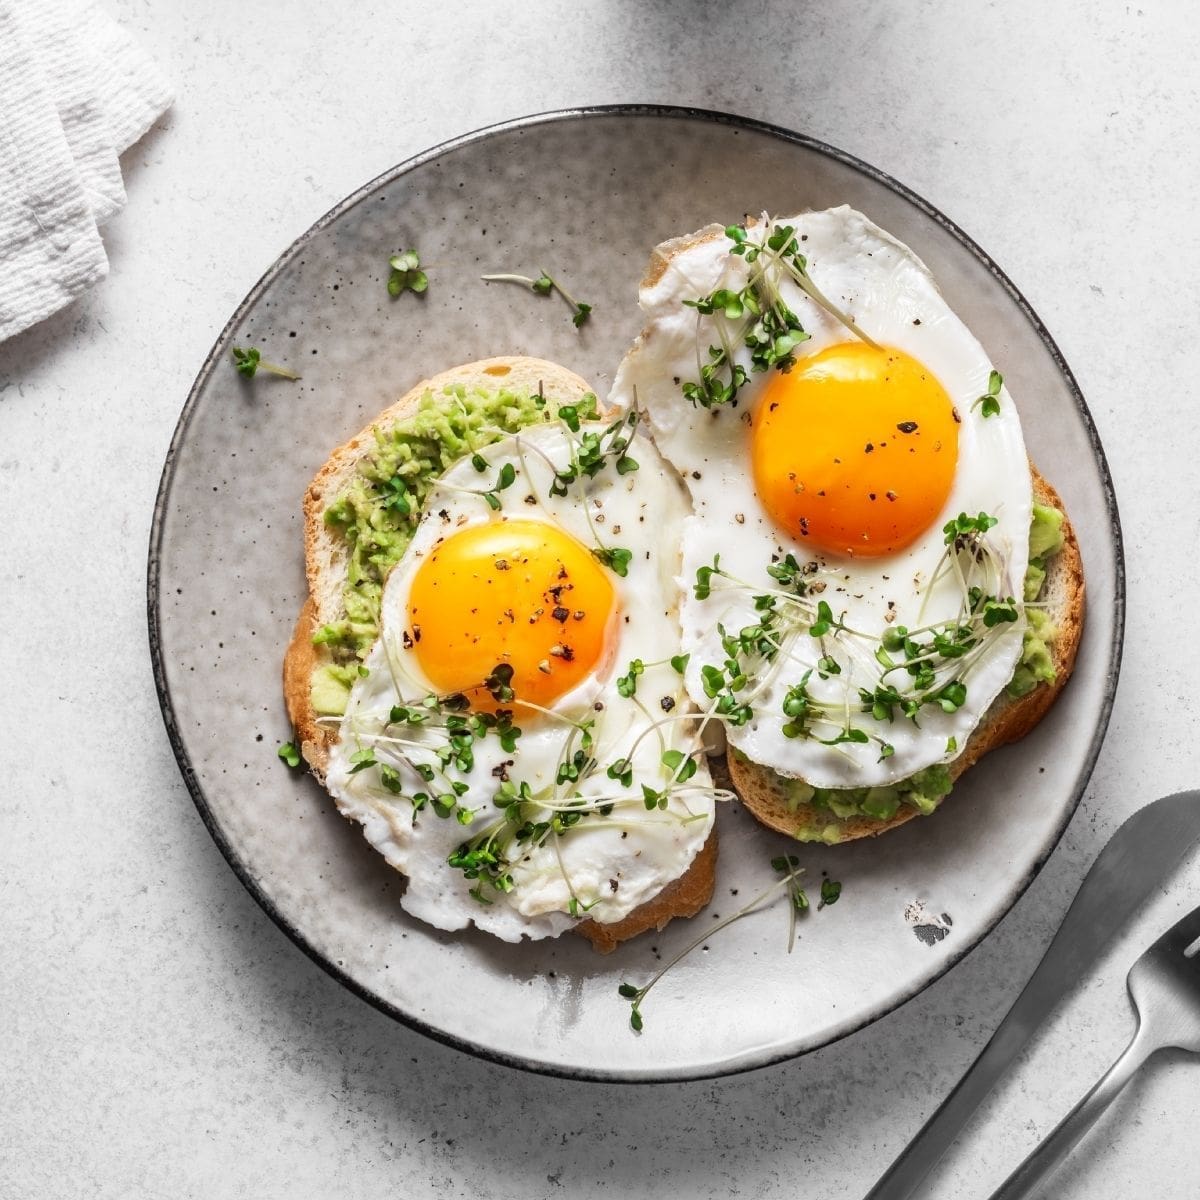 25 Best Vegetarian Breakfast Ideas: Tasty Meatless Breakfasts 🍳